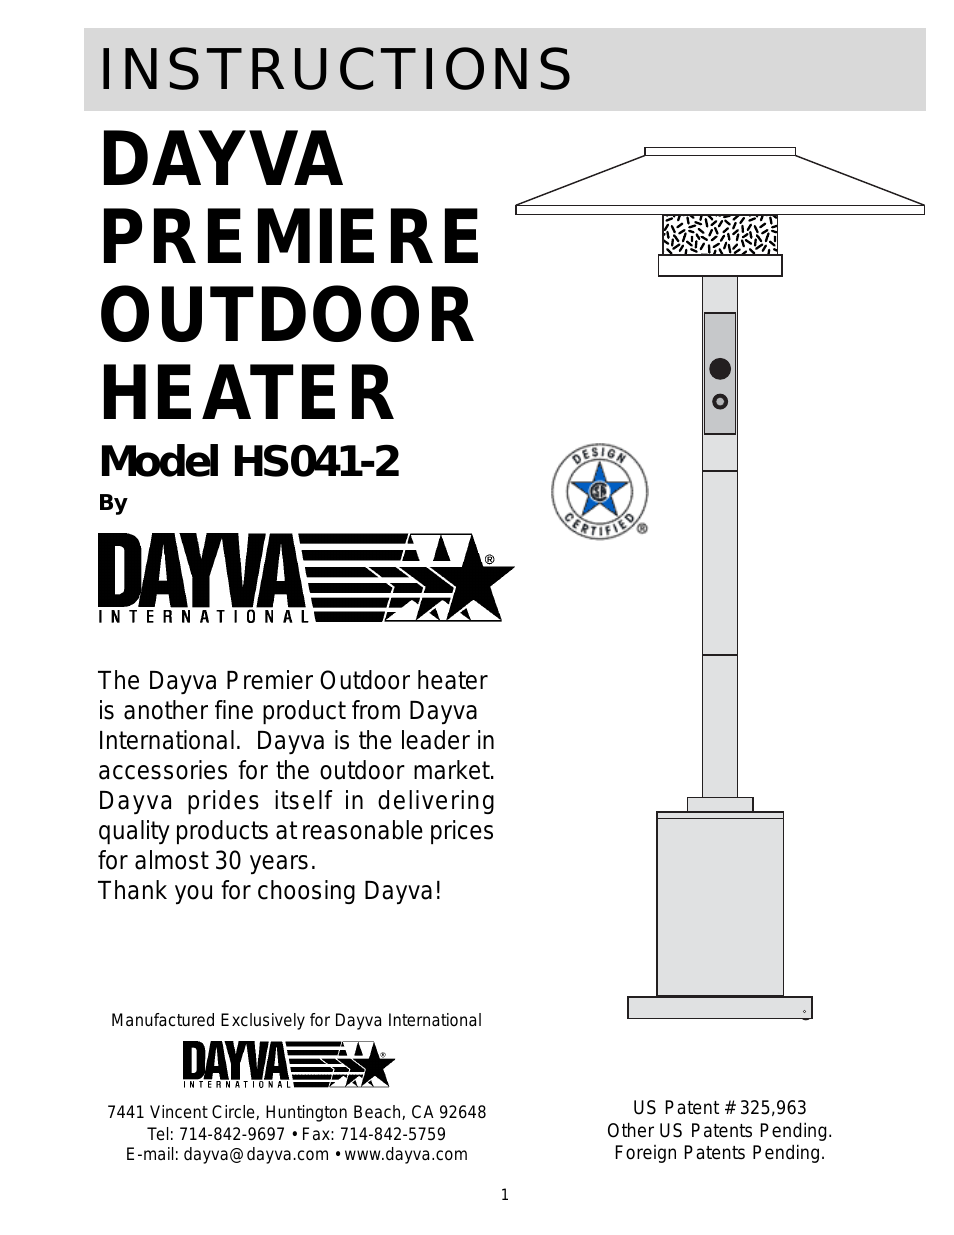 Dayva Premiere Outdoor Heater HS041-2